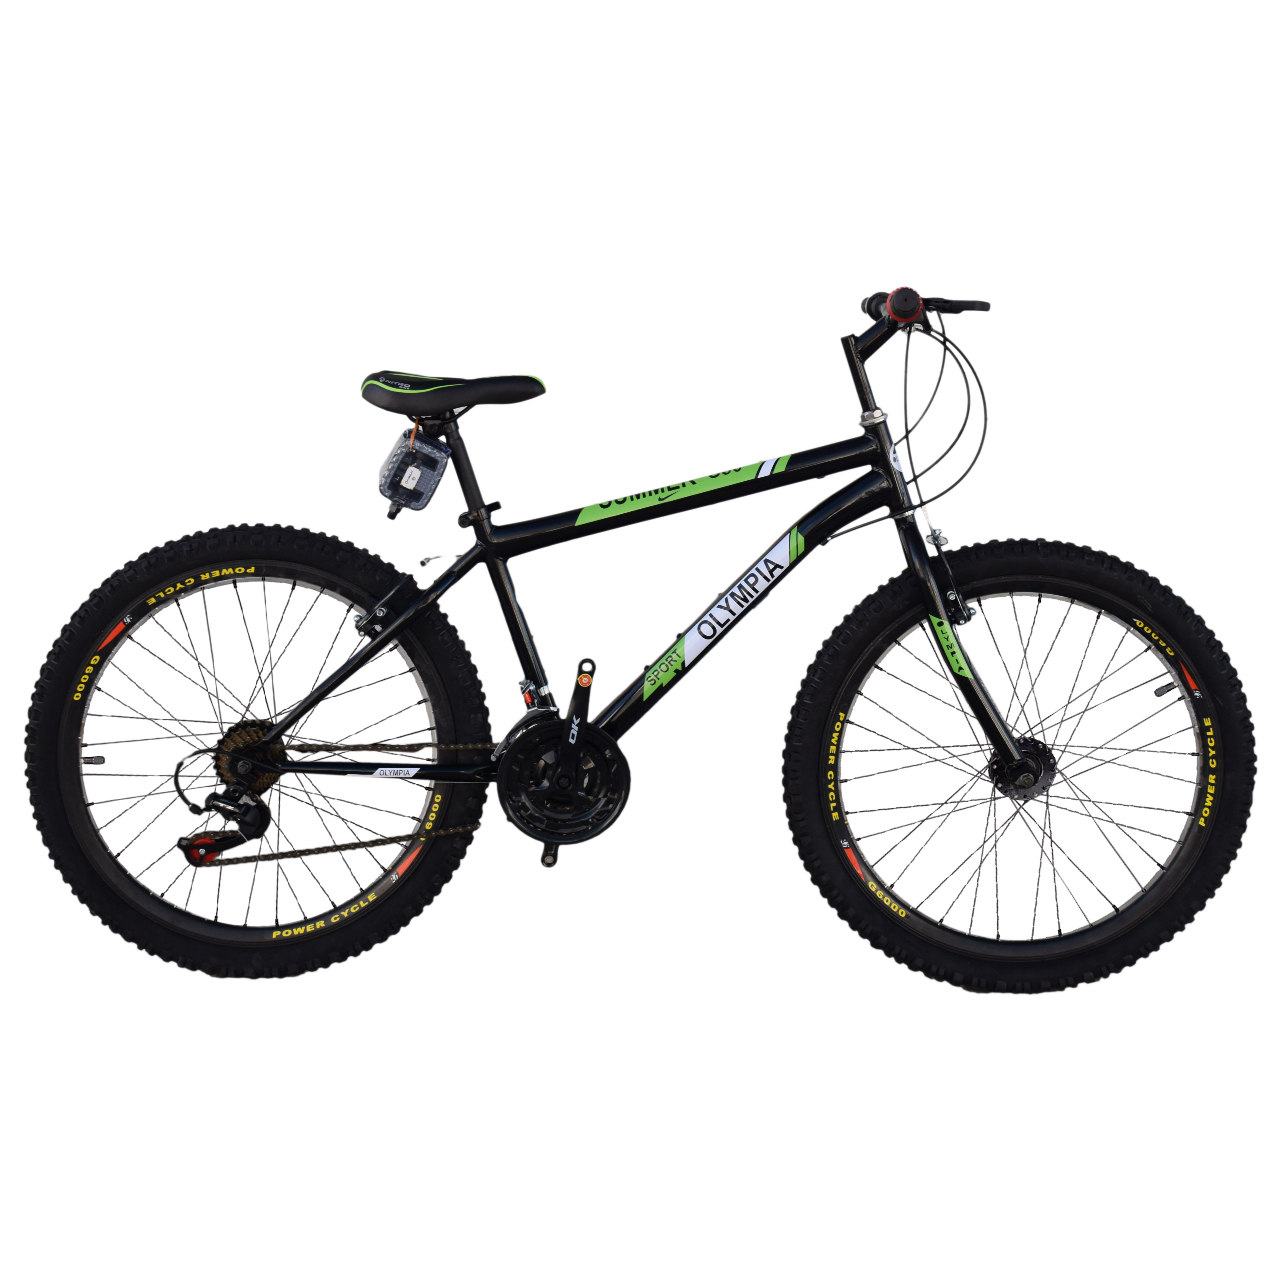 نکته خرید - قیمت روز دوچرخه کوهستان المپیا مدل 0002 سایز 26 خرید